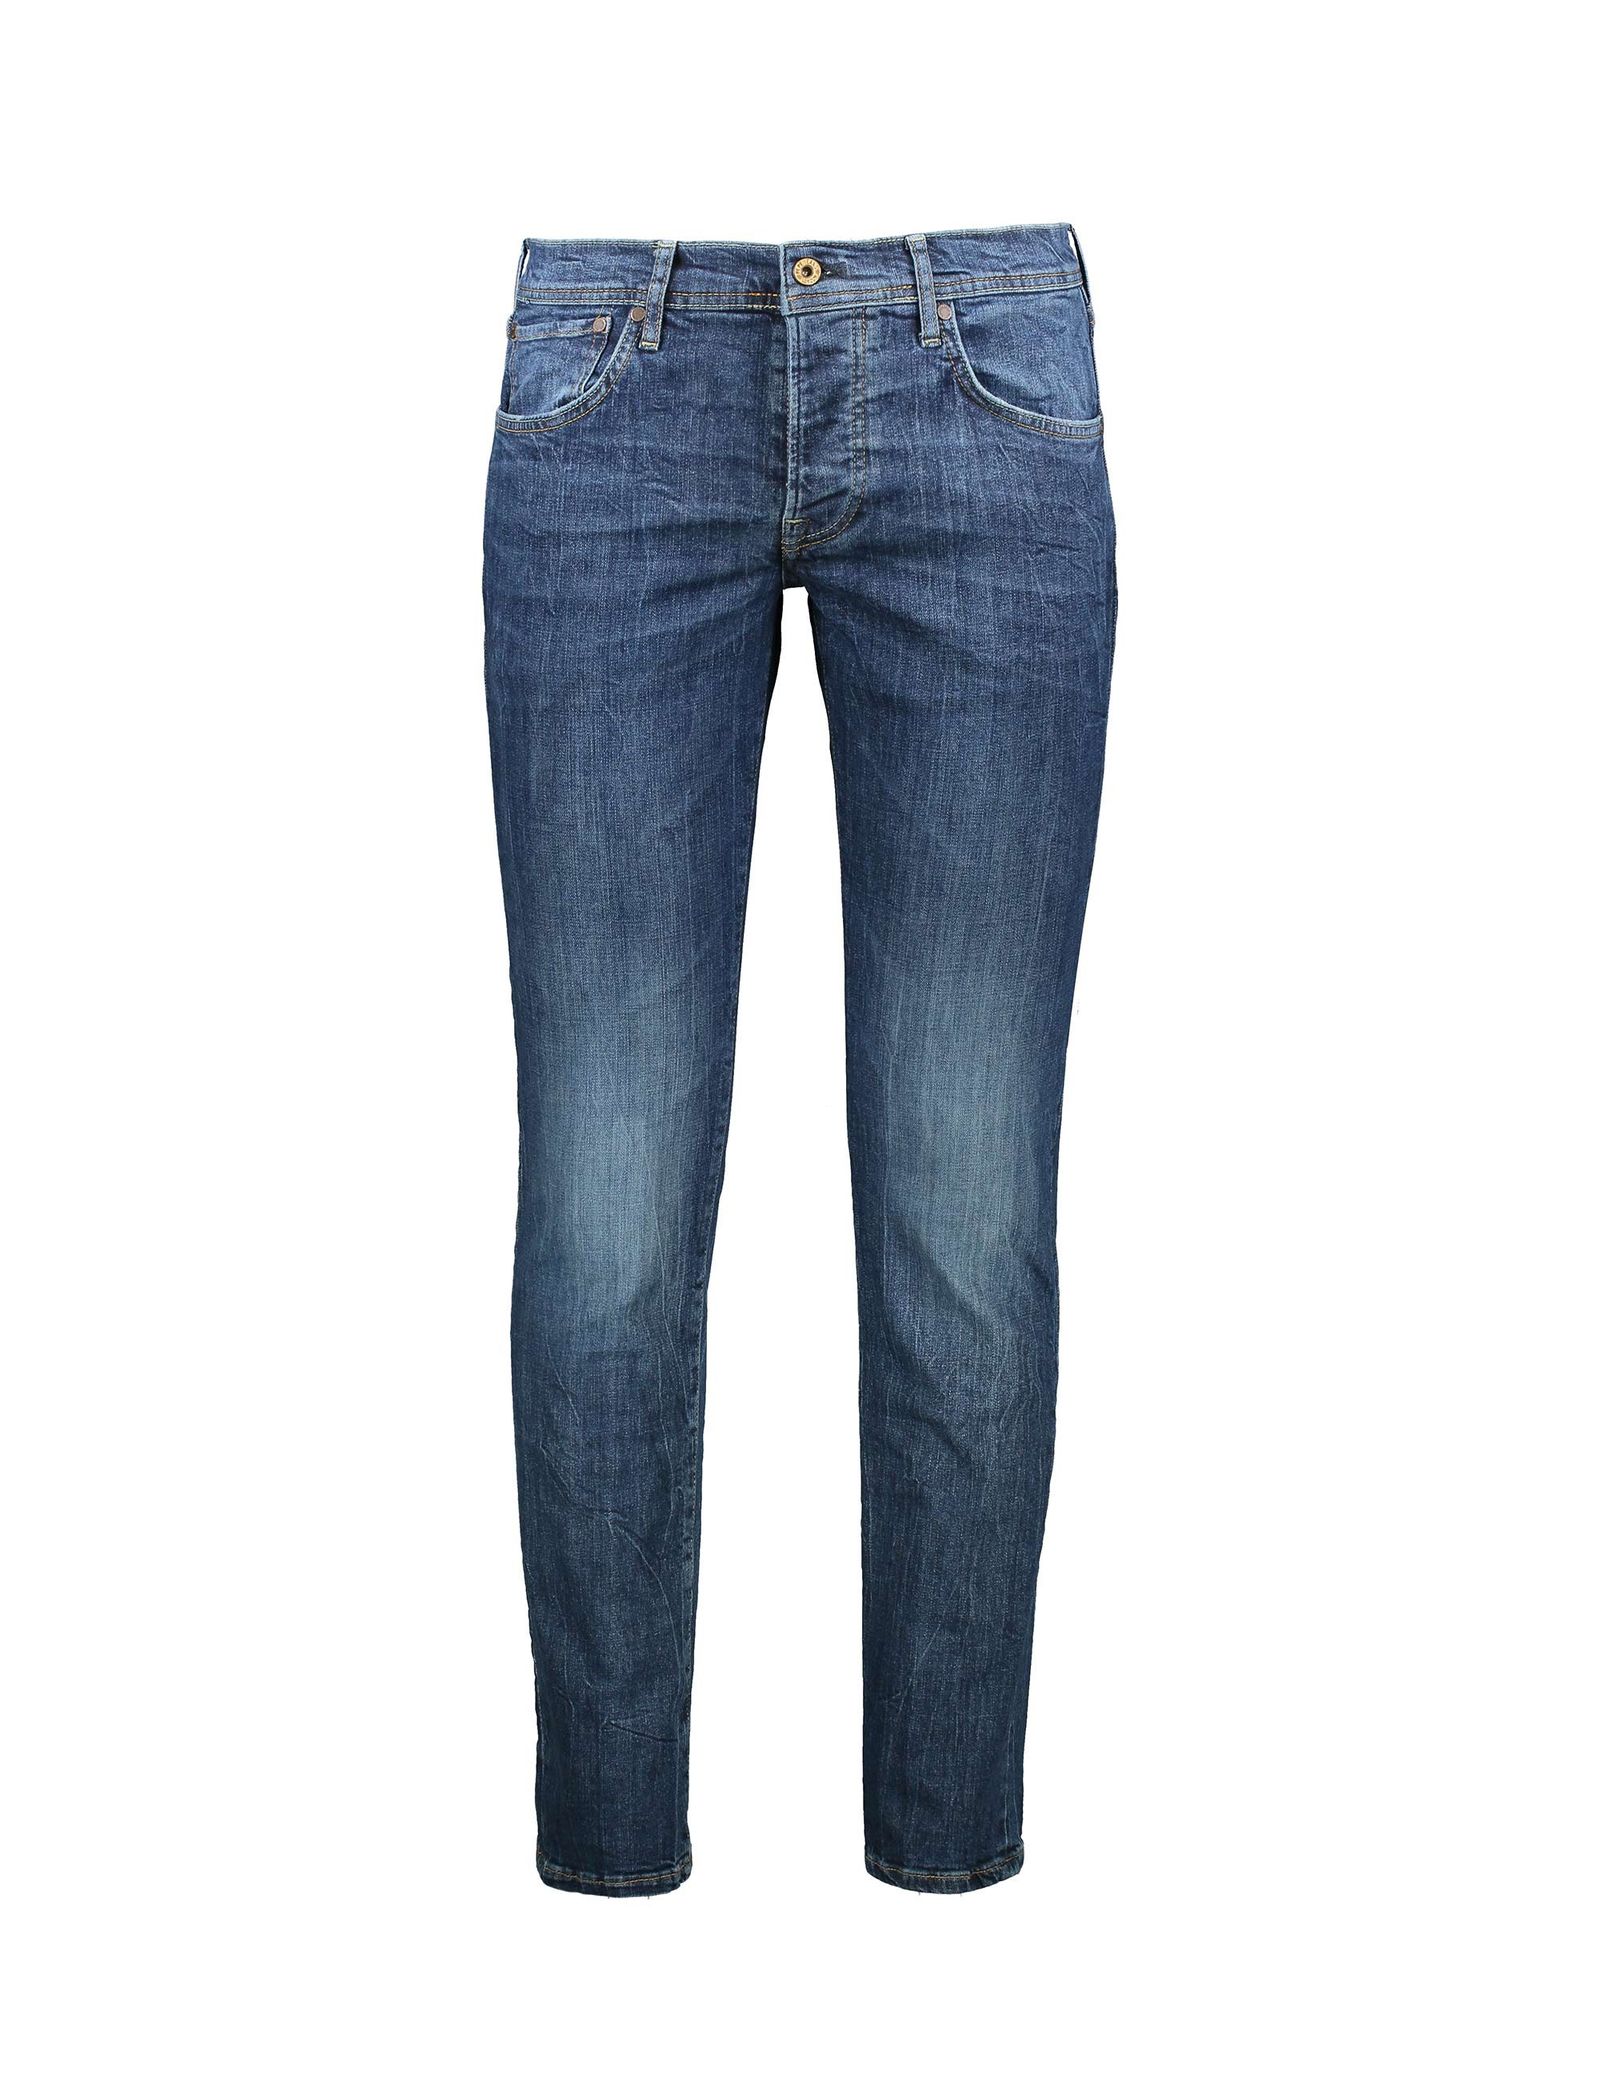 شلوار جین راسته مردانه - پپه جینز - سرمه اي - 2